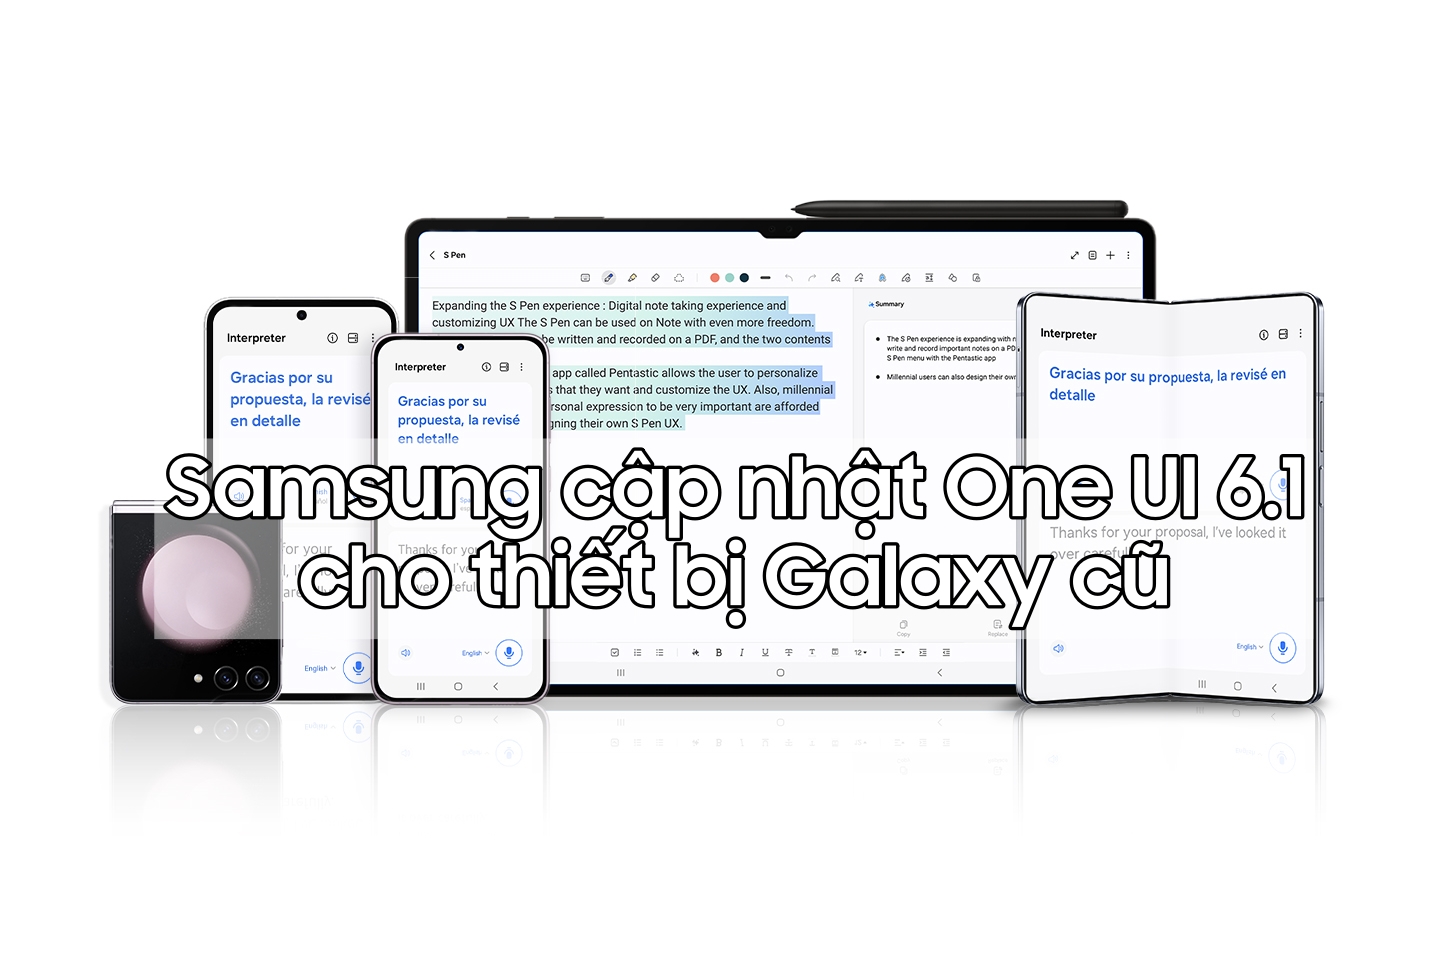 Tin vui Samfans, One UI 6.1 đã chính thức cập nhật cho máy Galaxy cũ! 